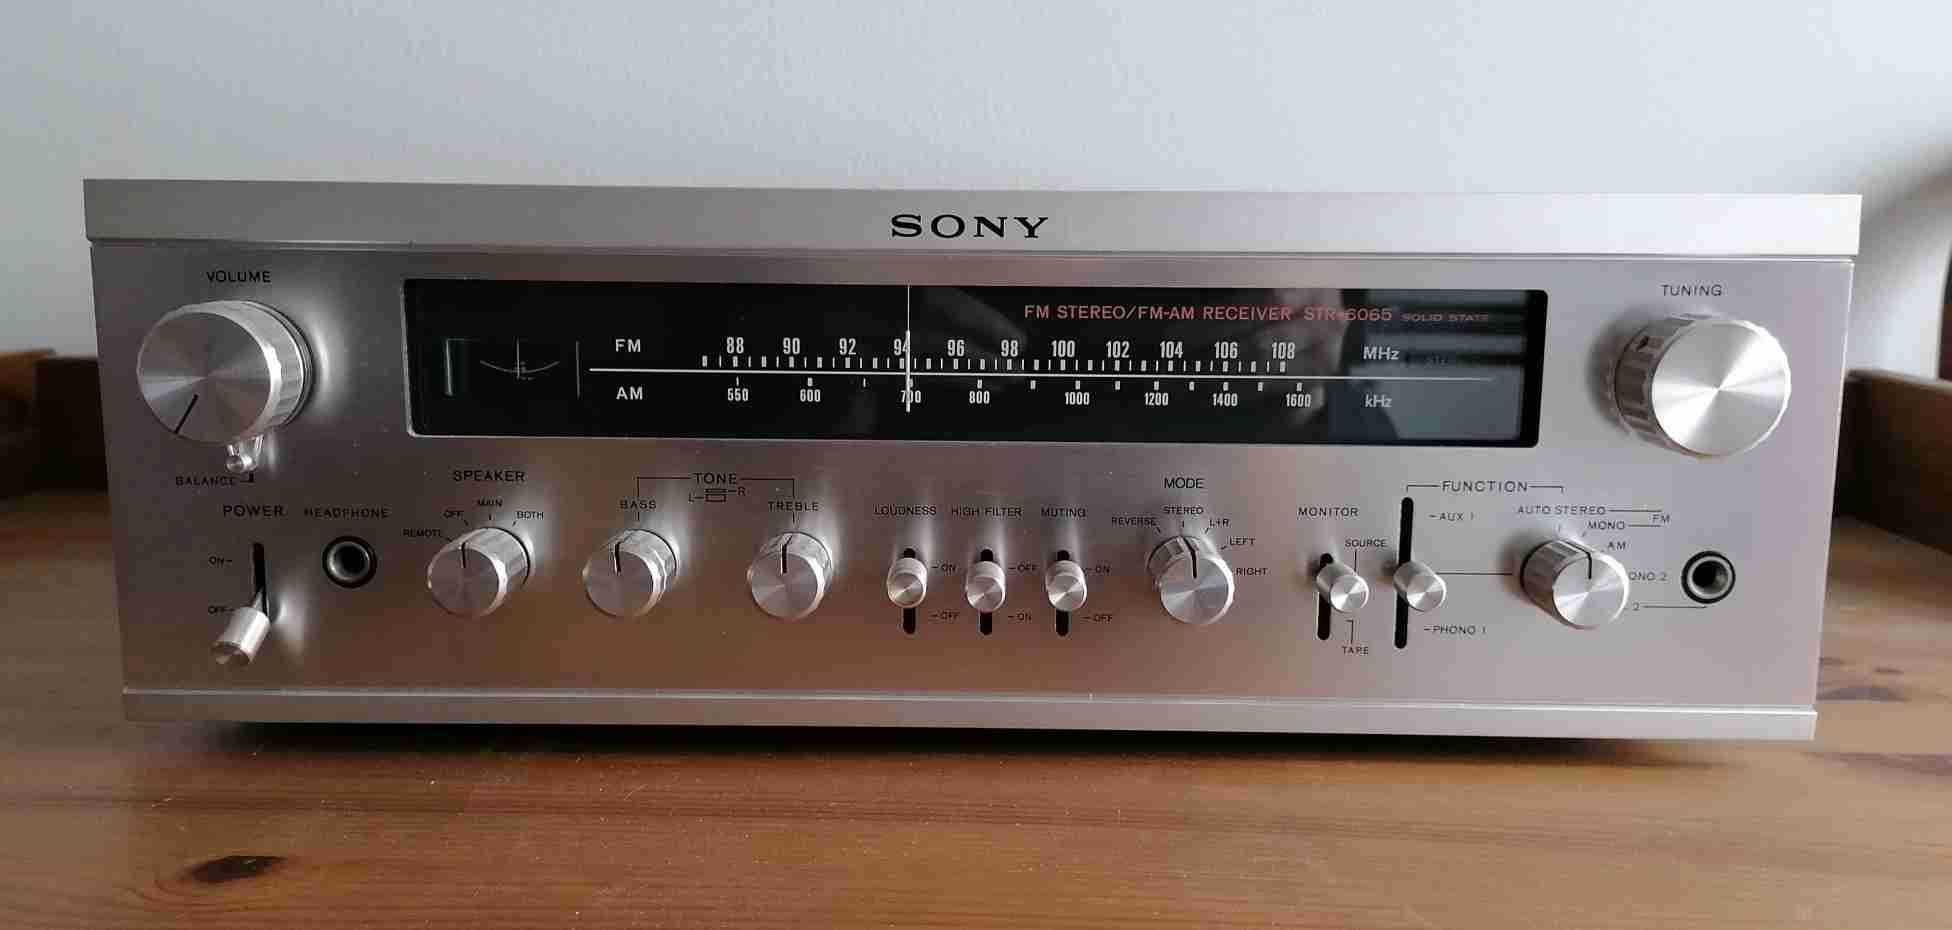 Amplificador sintonizador Sony - um clássico de qualidade